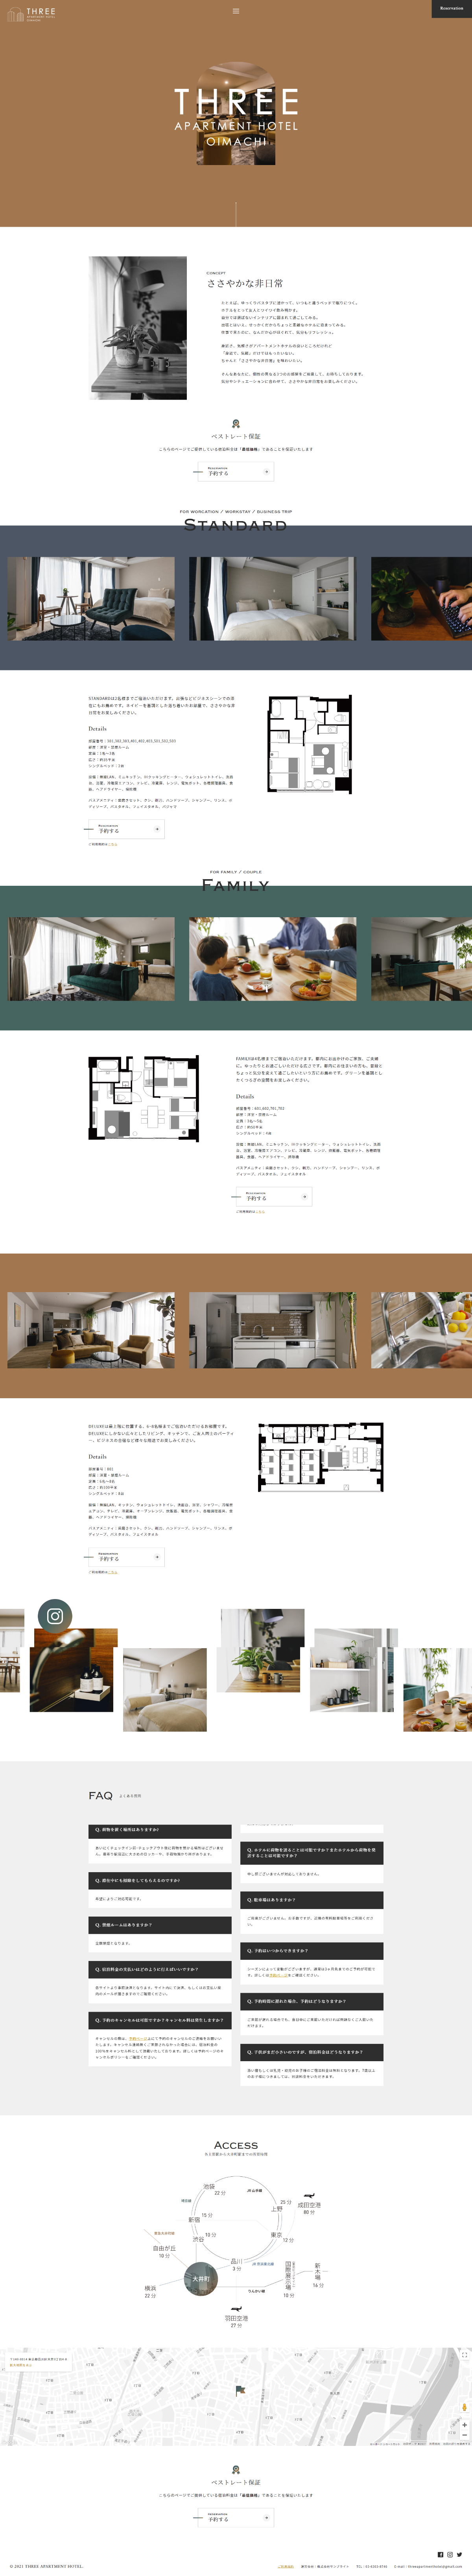 ホテル・旅館 ホームページ制作 WEBデザイン参考ギャラリー THREE APARTMENT HOTEL